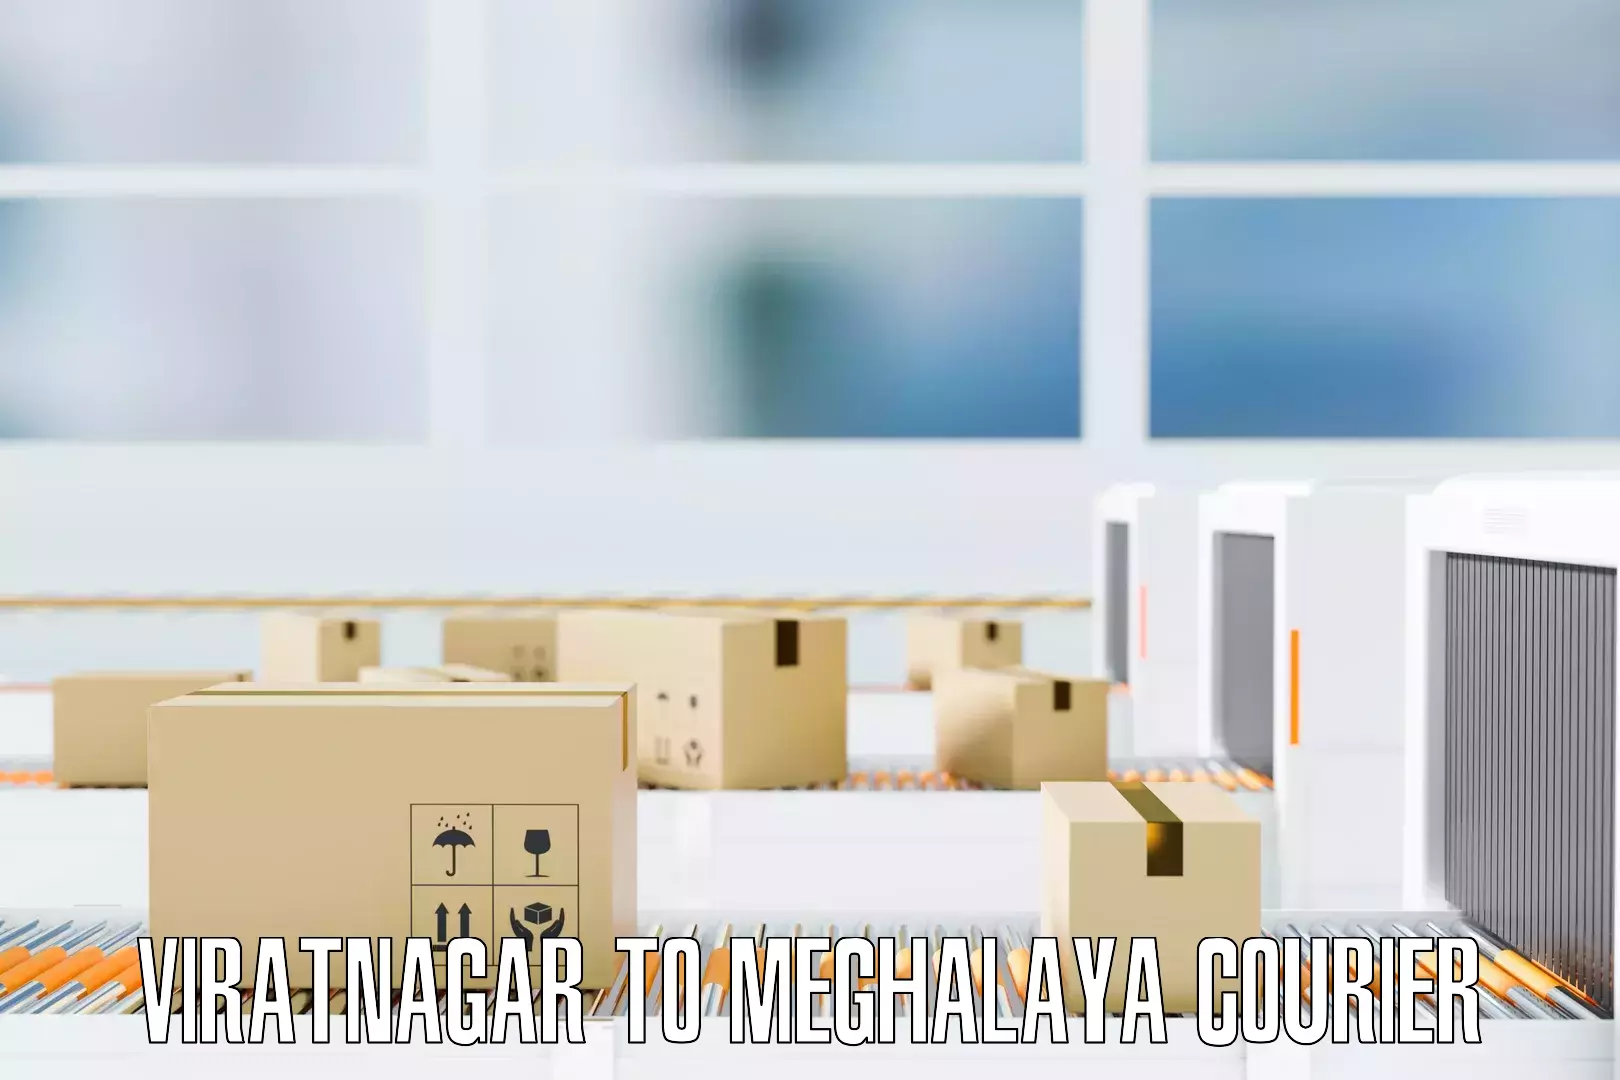 Easy furniture transport Viratnagar to Meghalaya